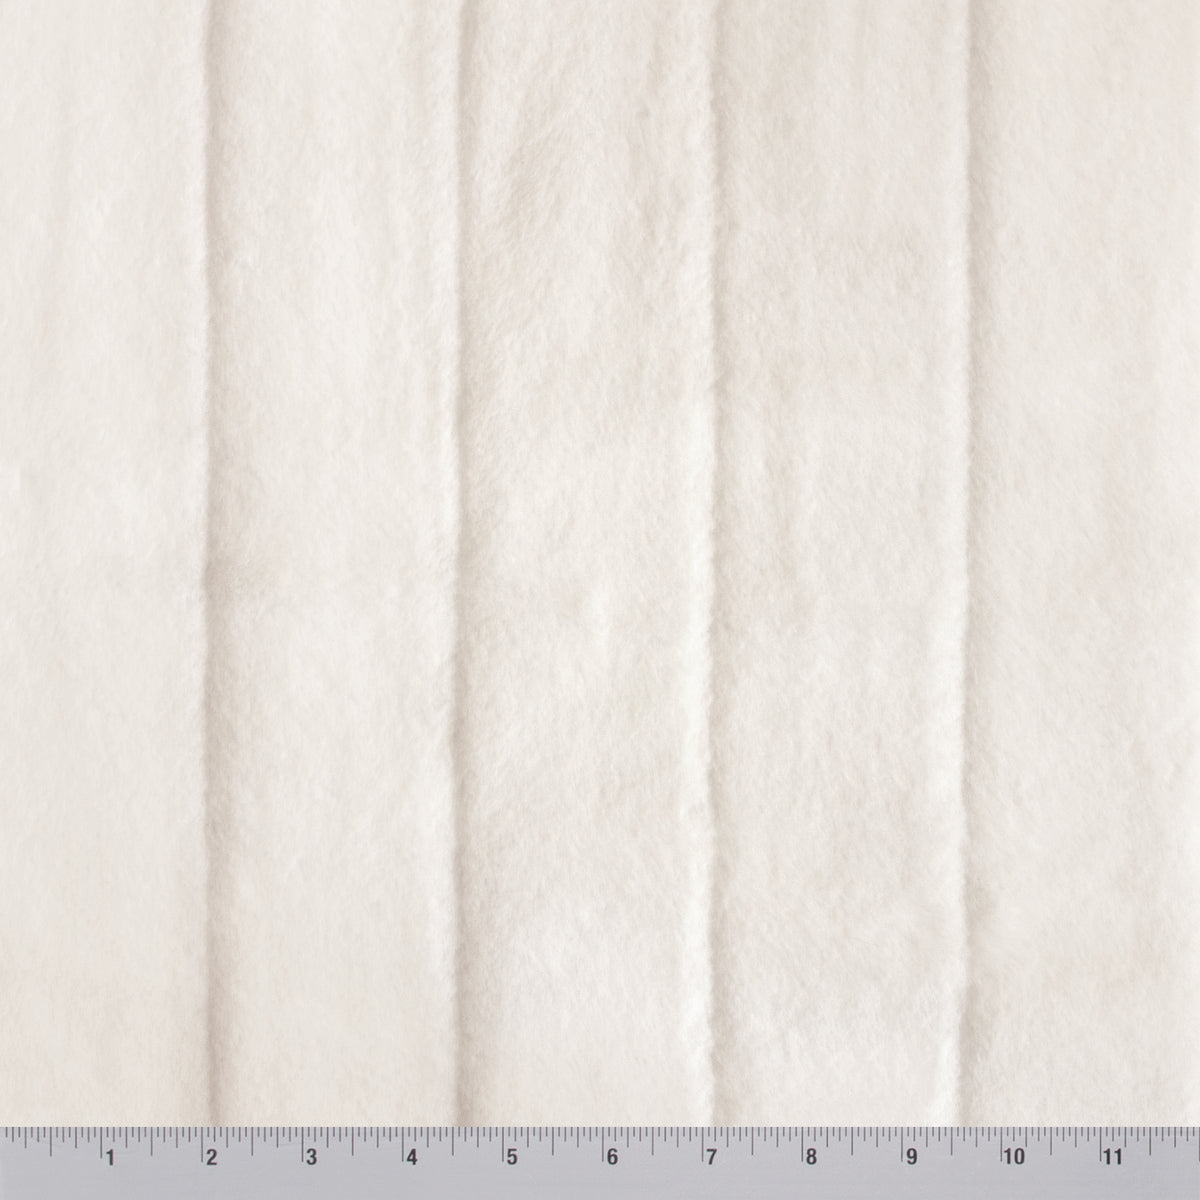 FabricLA Plain Navy Minky Fabric - Soft and Minky Fabric - 58/60 Inches  (150 CM) Wide - Solid Navy Minky Fabric by The Yard - Baby Minky Fabric 